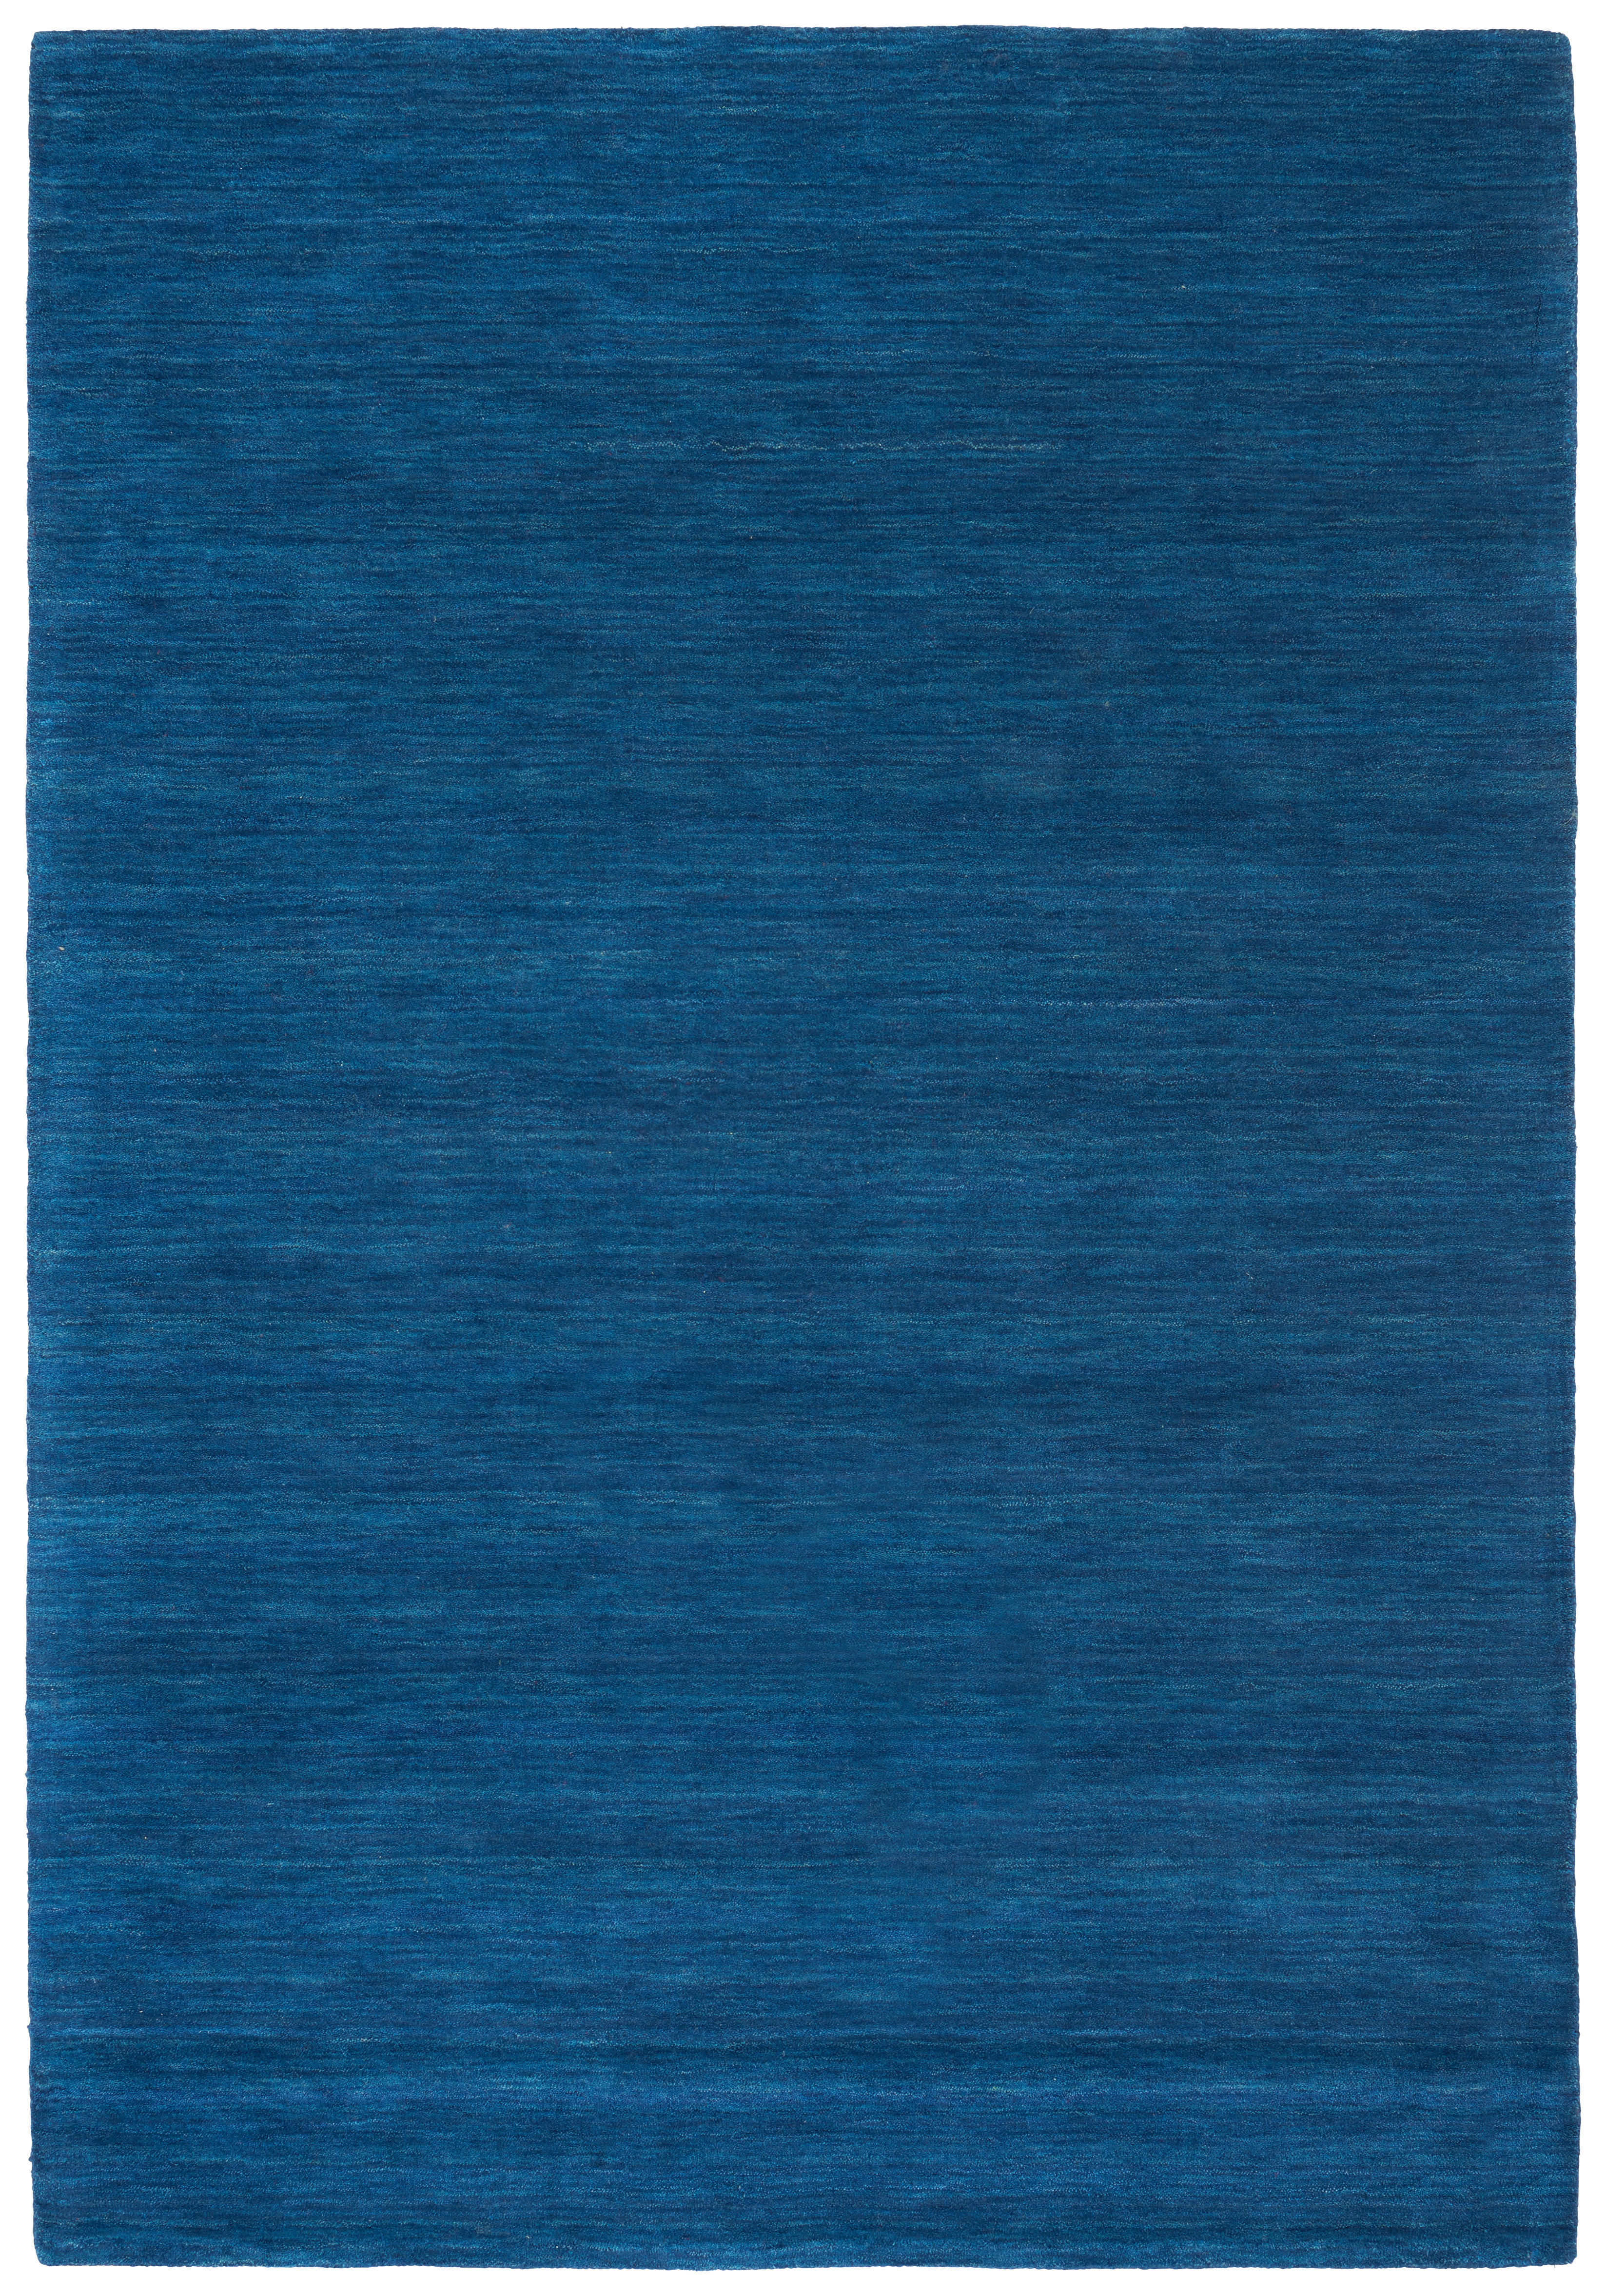 Cazaris ORIENTÁLNÍ KOBEREC, 60/90 cm, modrá - modrá